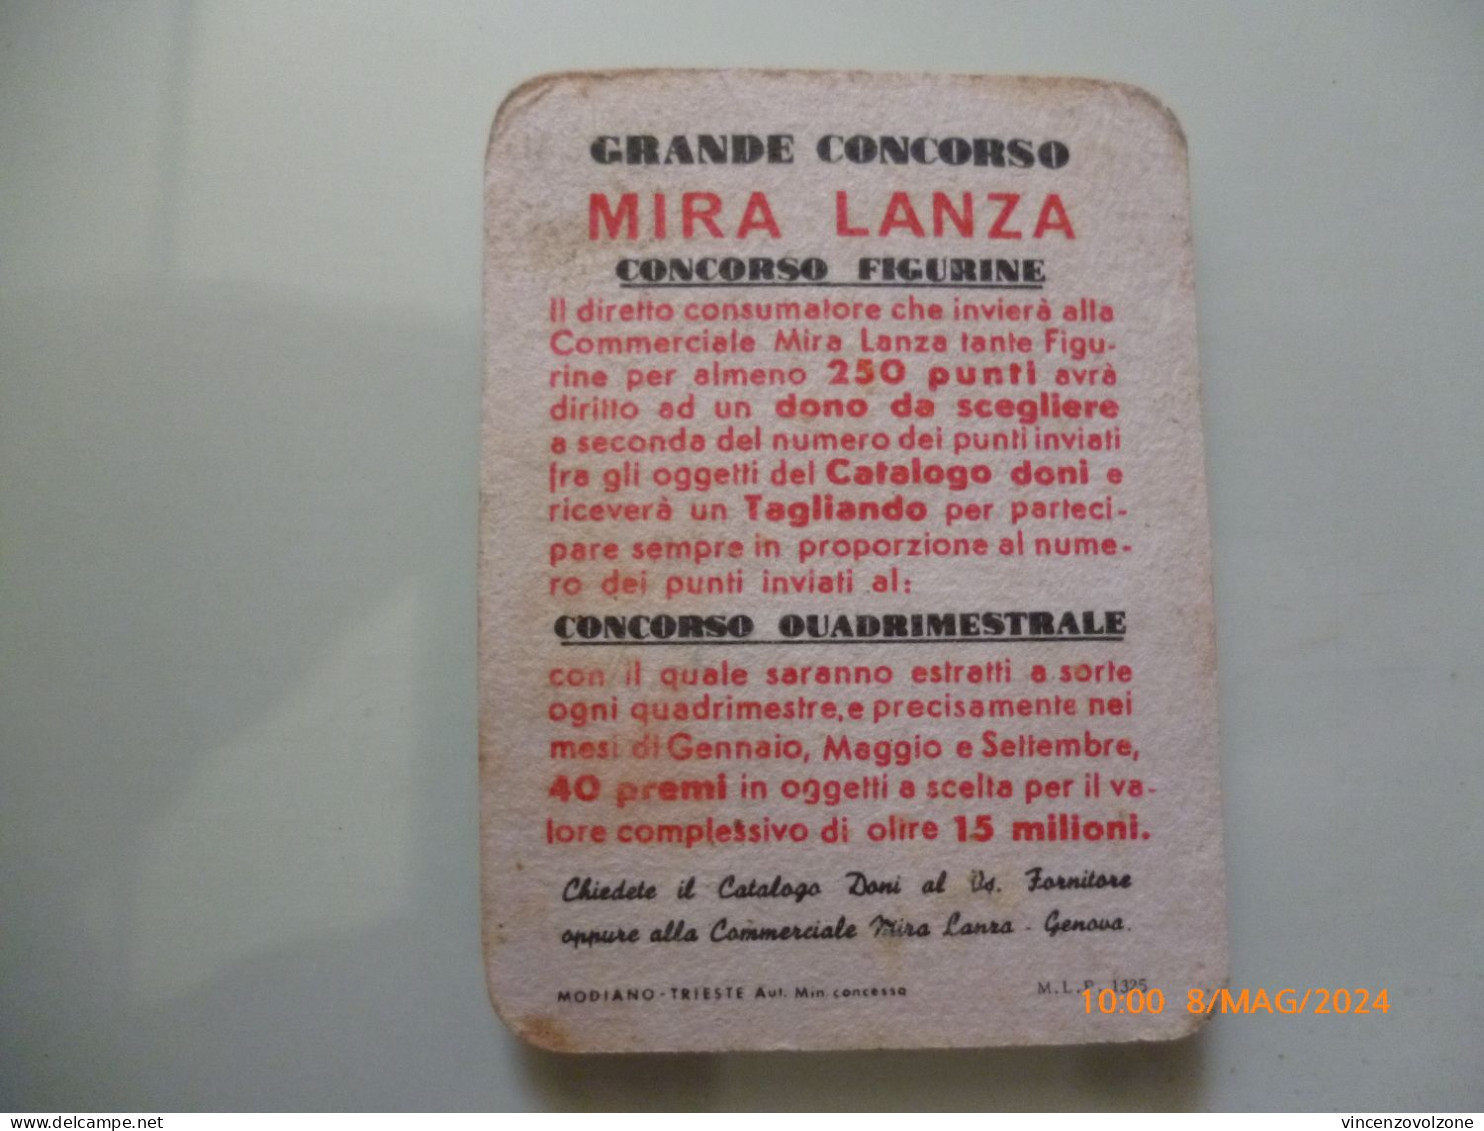 Figurina "MIRALANZA 5 DETERGENTE BIOL" - Advertising